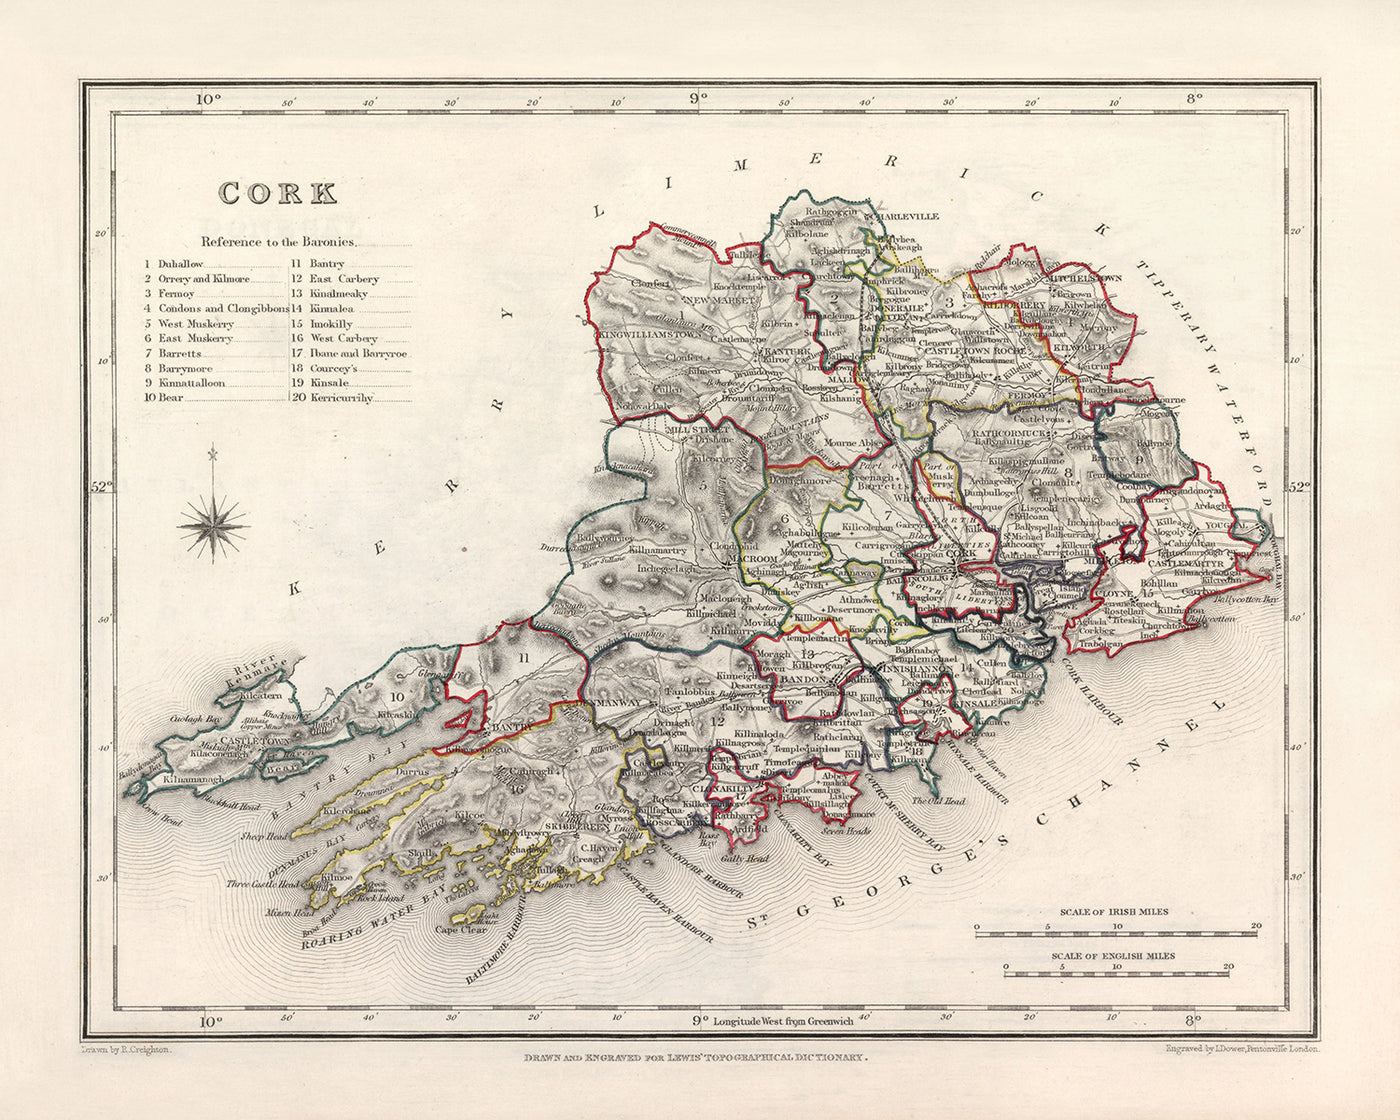 Mapa antiguo del condado de Cork por Samuel Lewis, 1844: Cobh, Kinsale, Castillo de Blarney, Casa Fota, Mizen Head